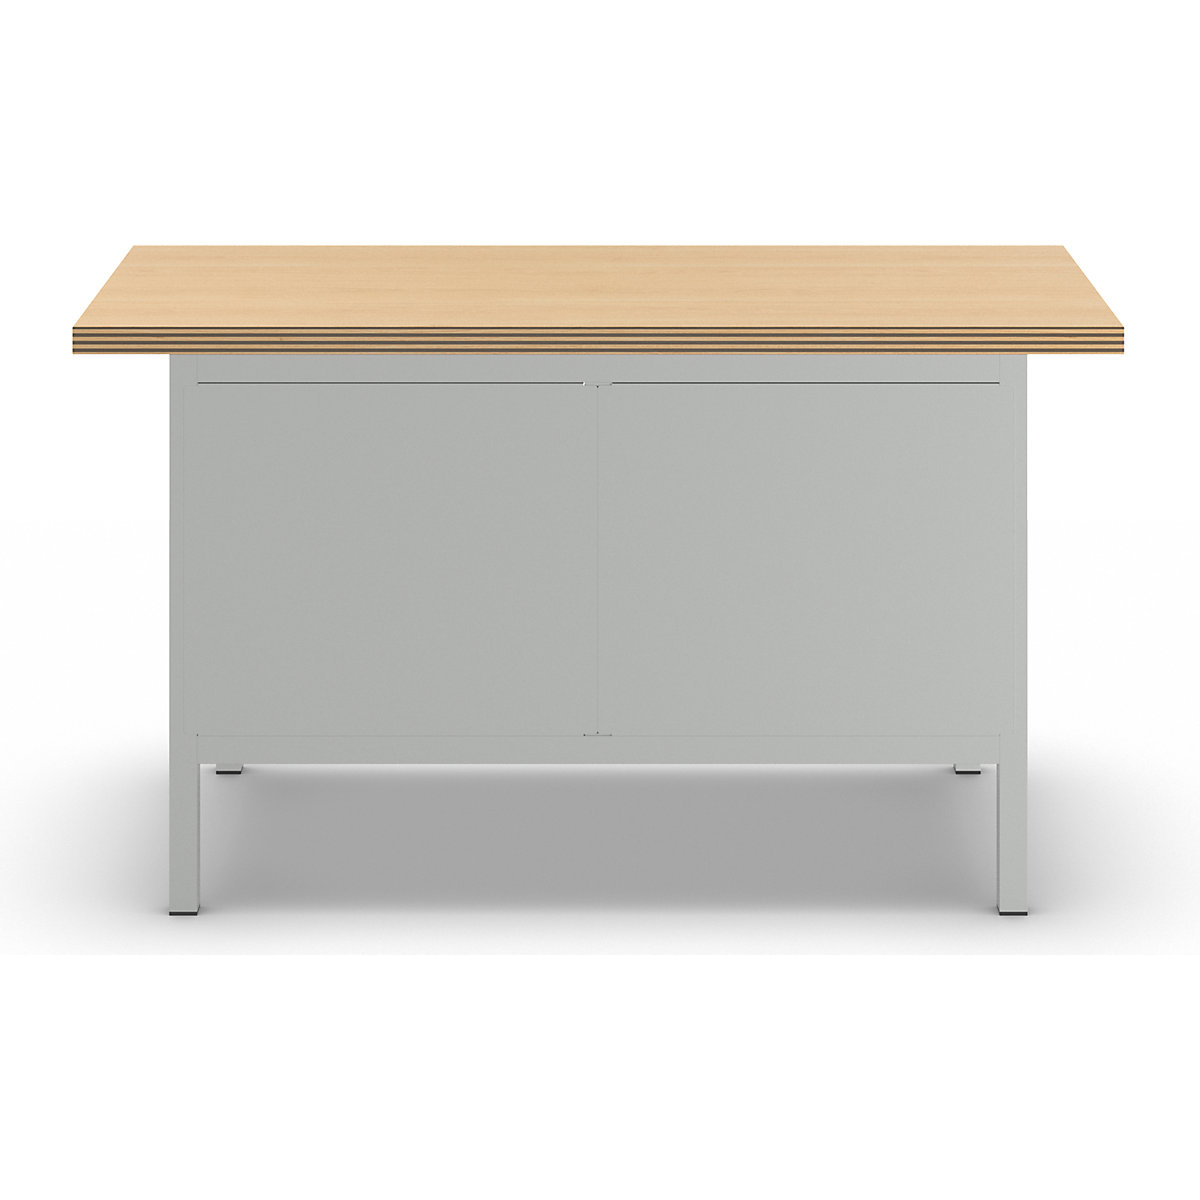 Stół warsztatowy z blatem z multipleksu, konstrukcja ramowa – LISTA (Zdjęcie produktu 3)-2